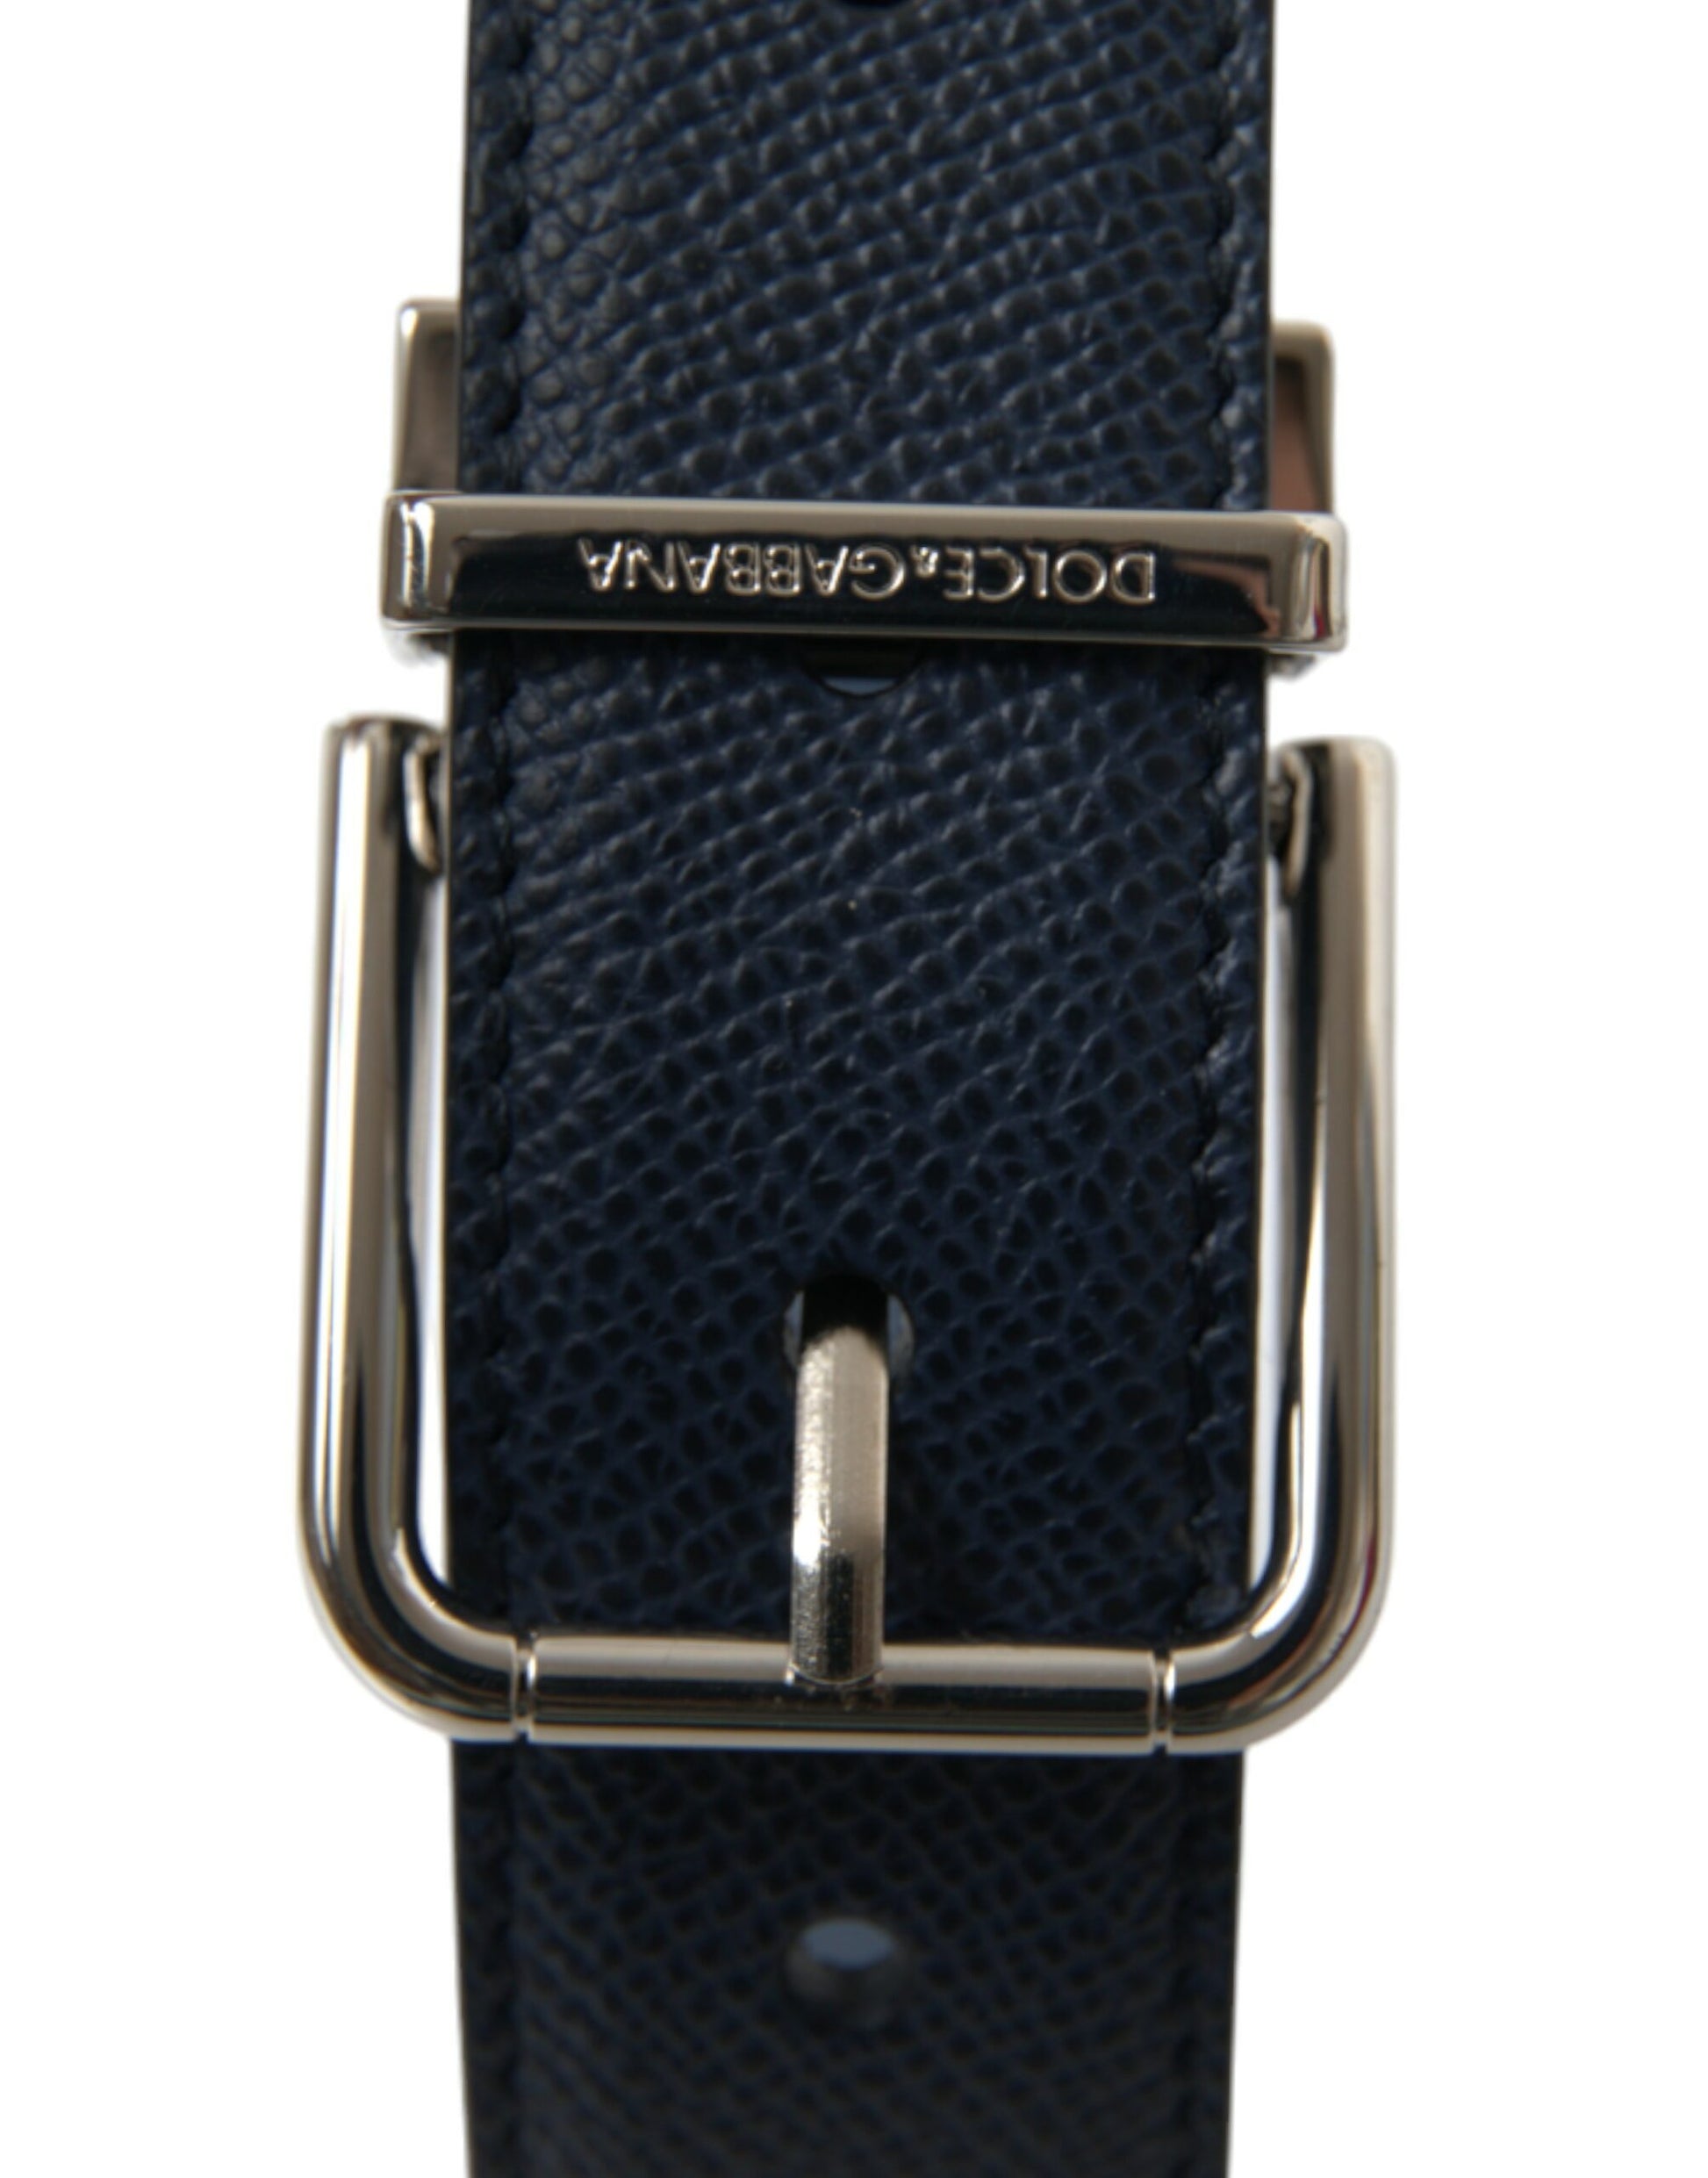 Elegant Navy Blue Leather Belt